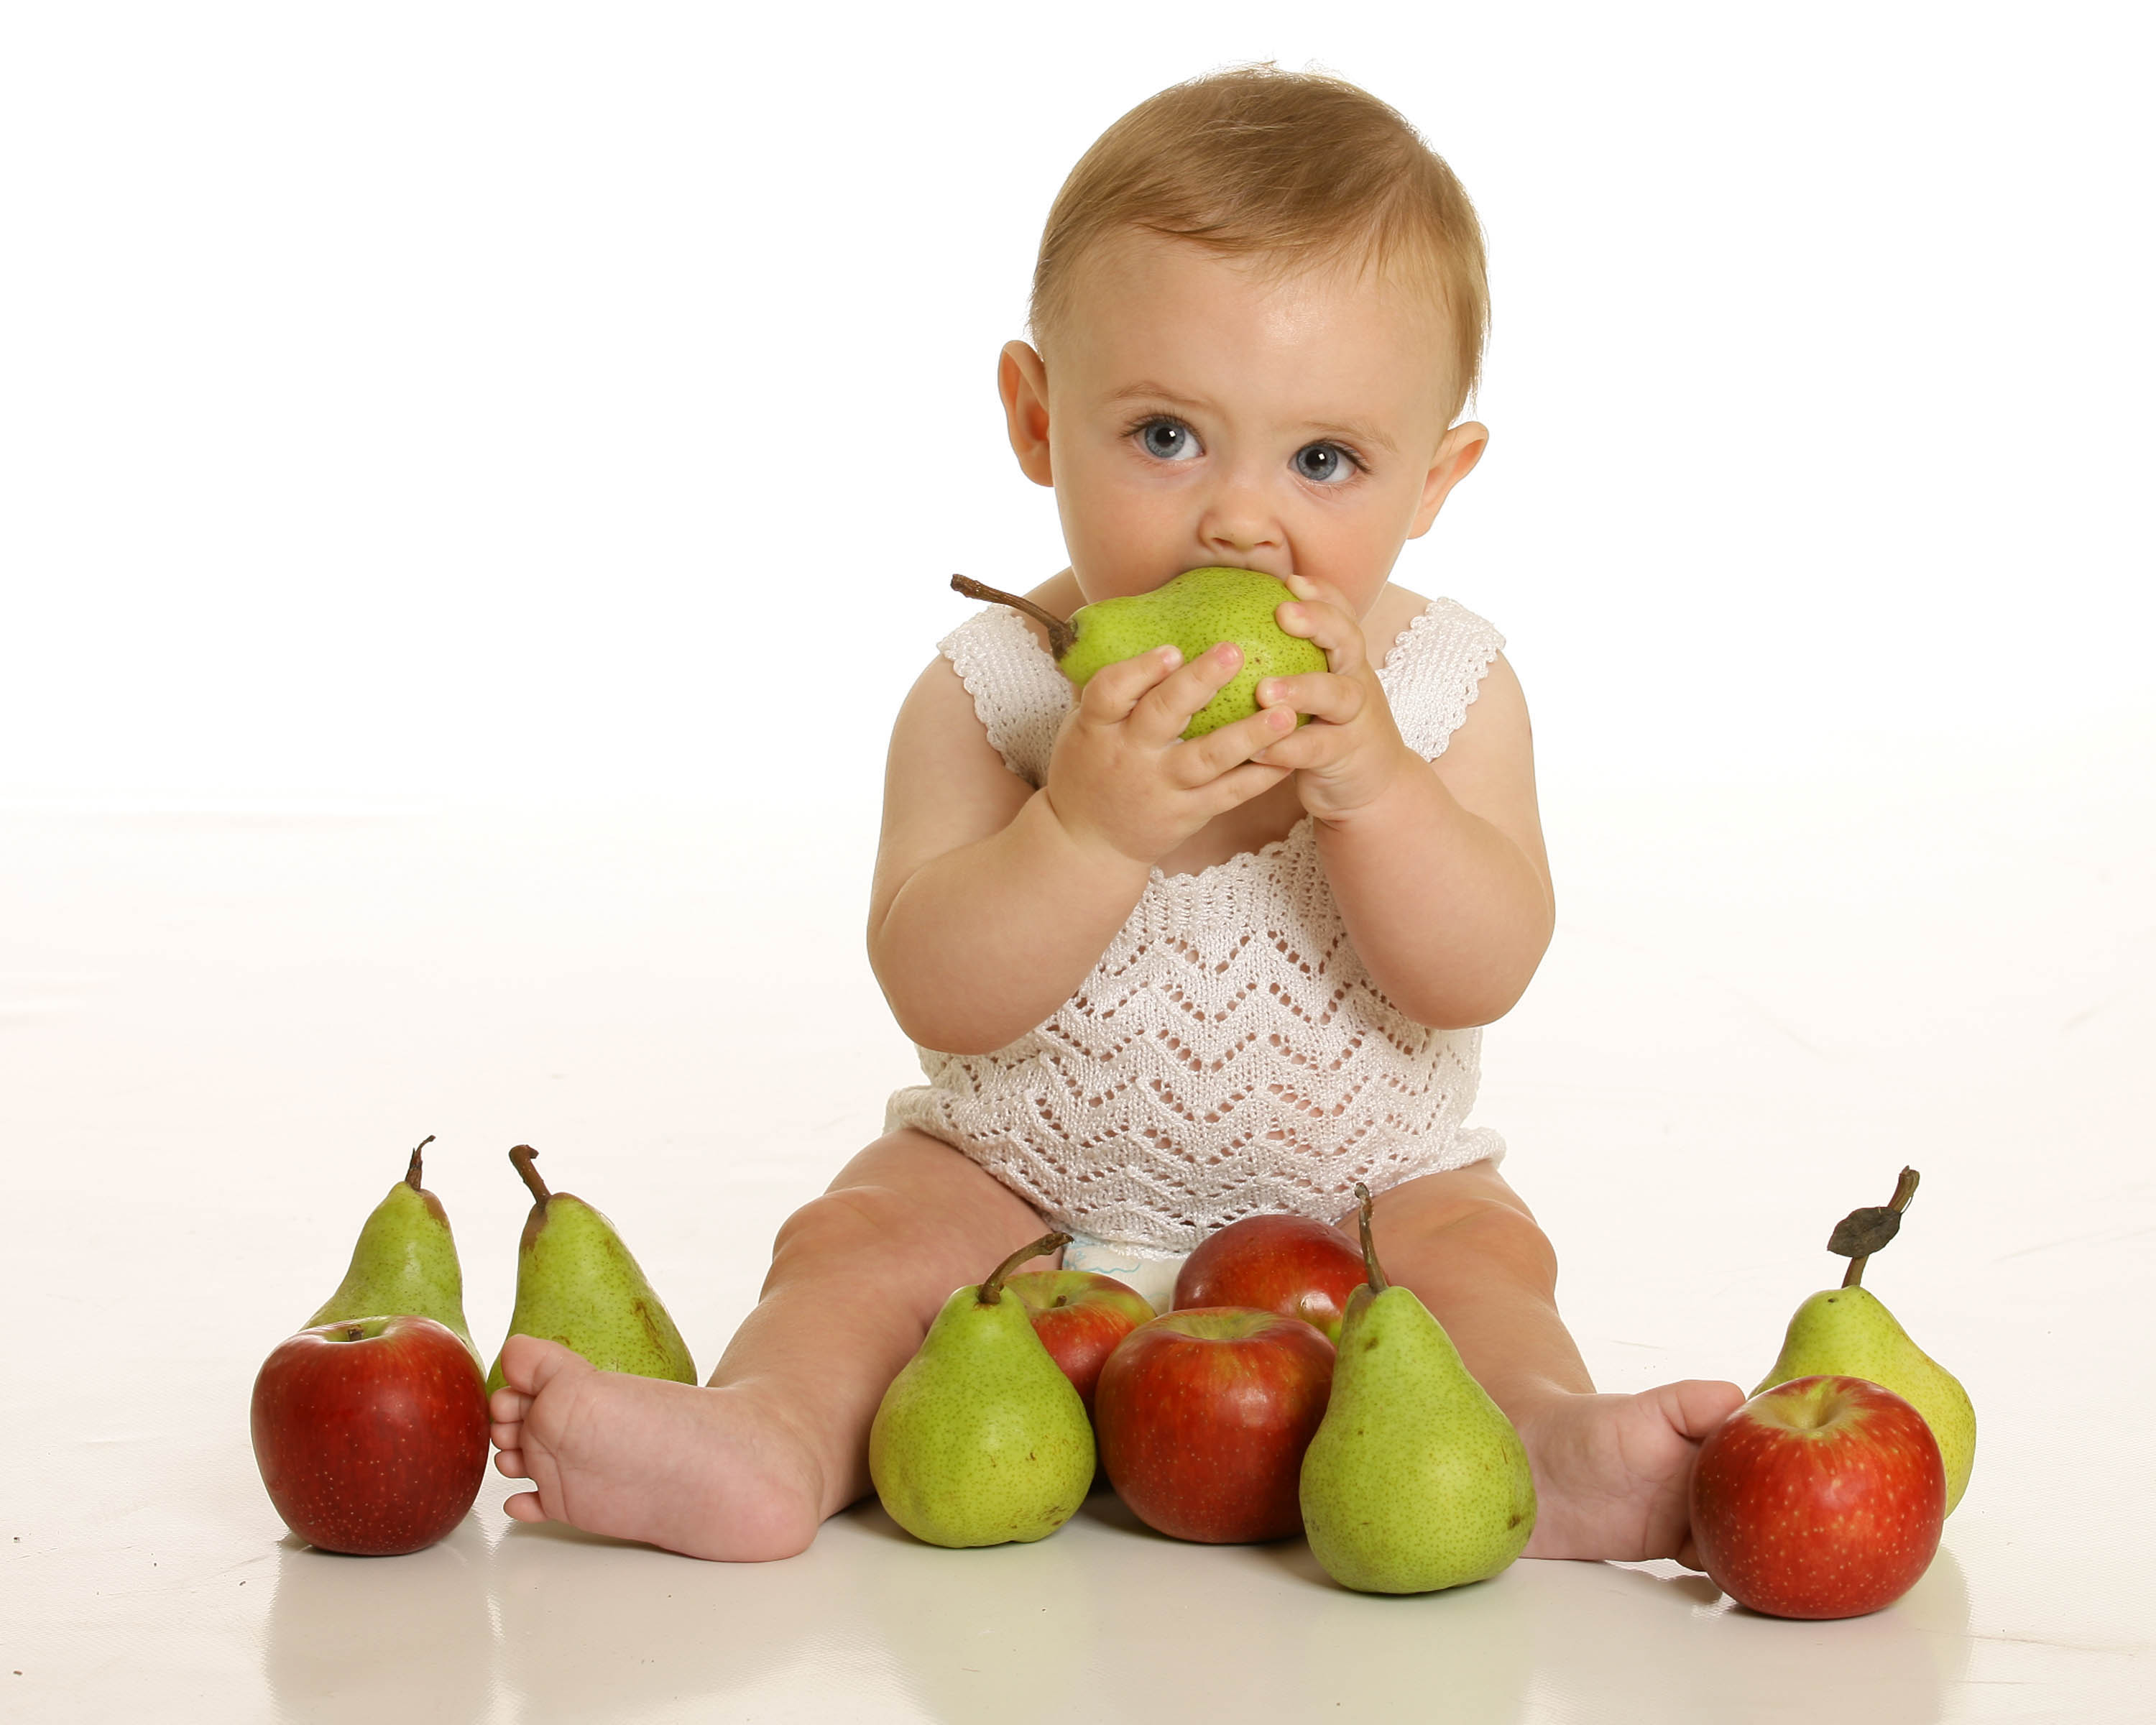 میوه در تغذیه کودکان، از کی شروع کنیم؟